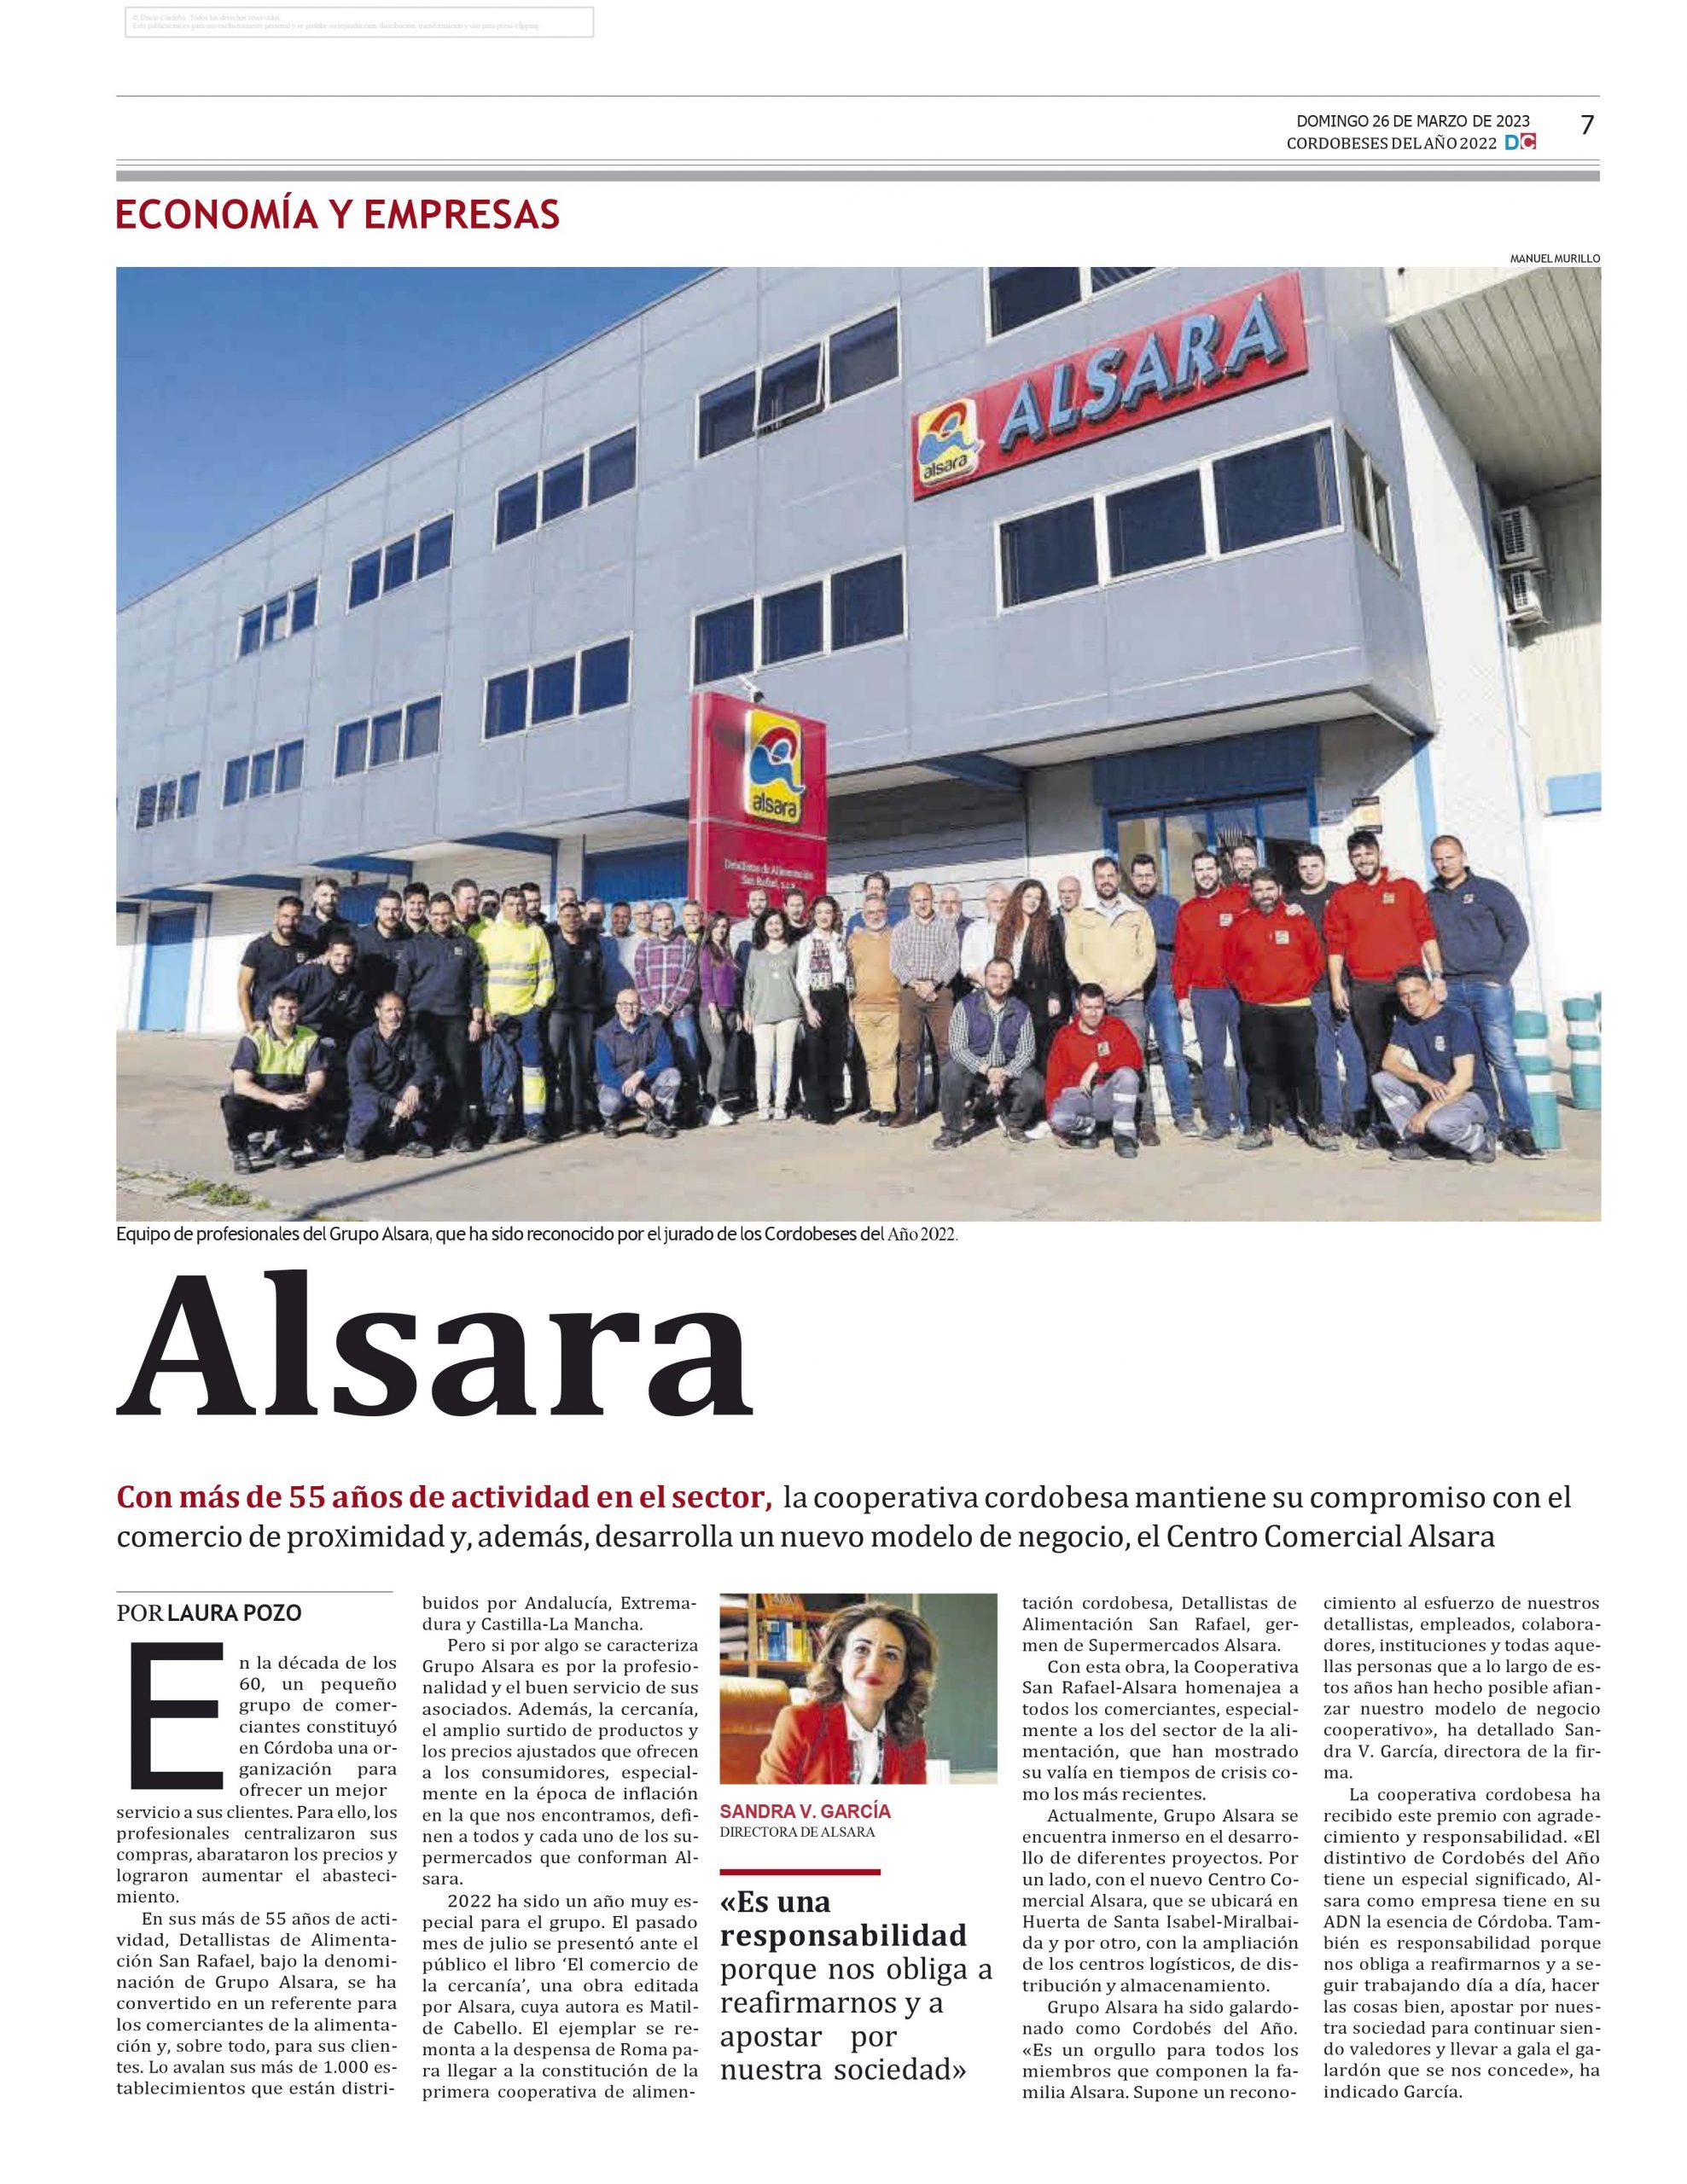 Alsara, nombrada Empresa Cordobesa del Año  3